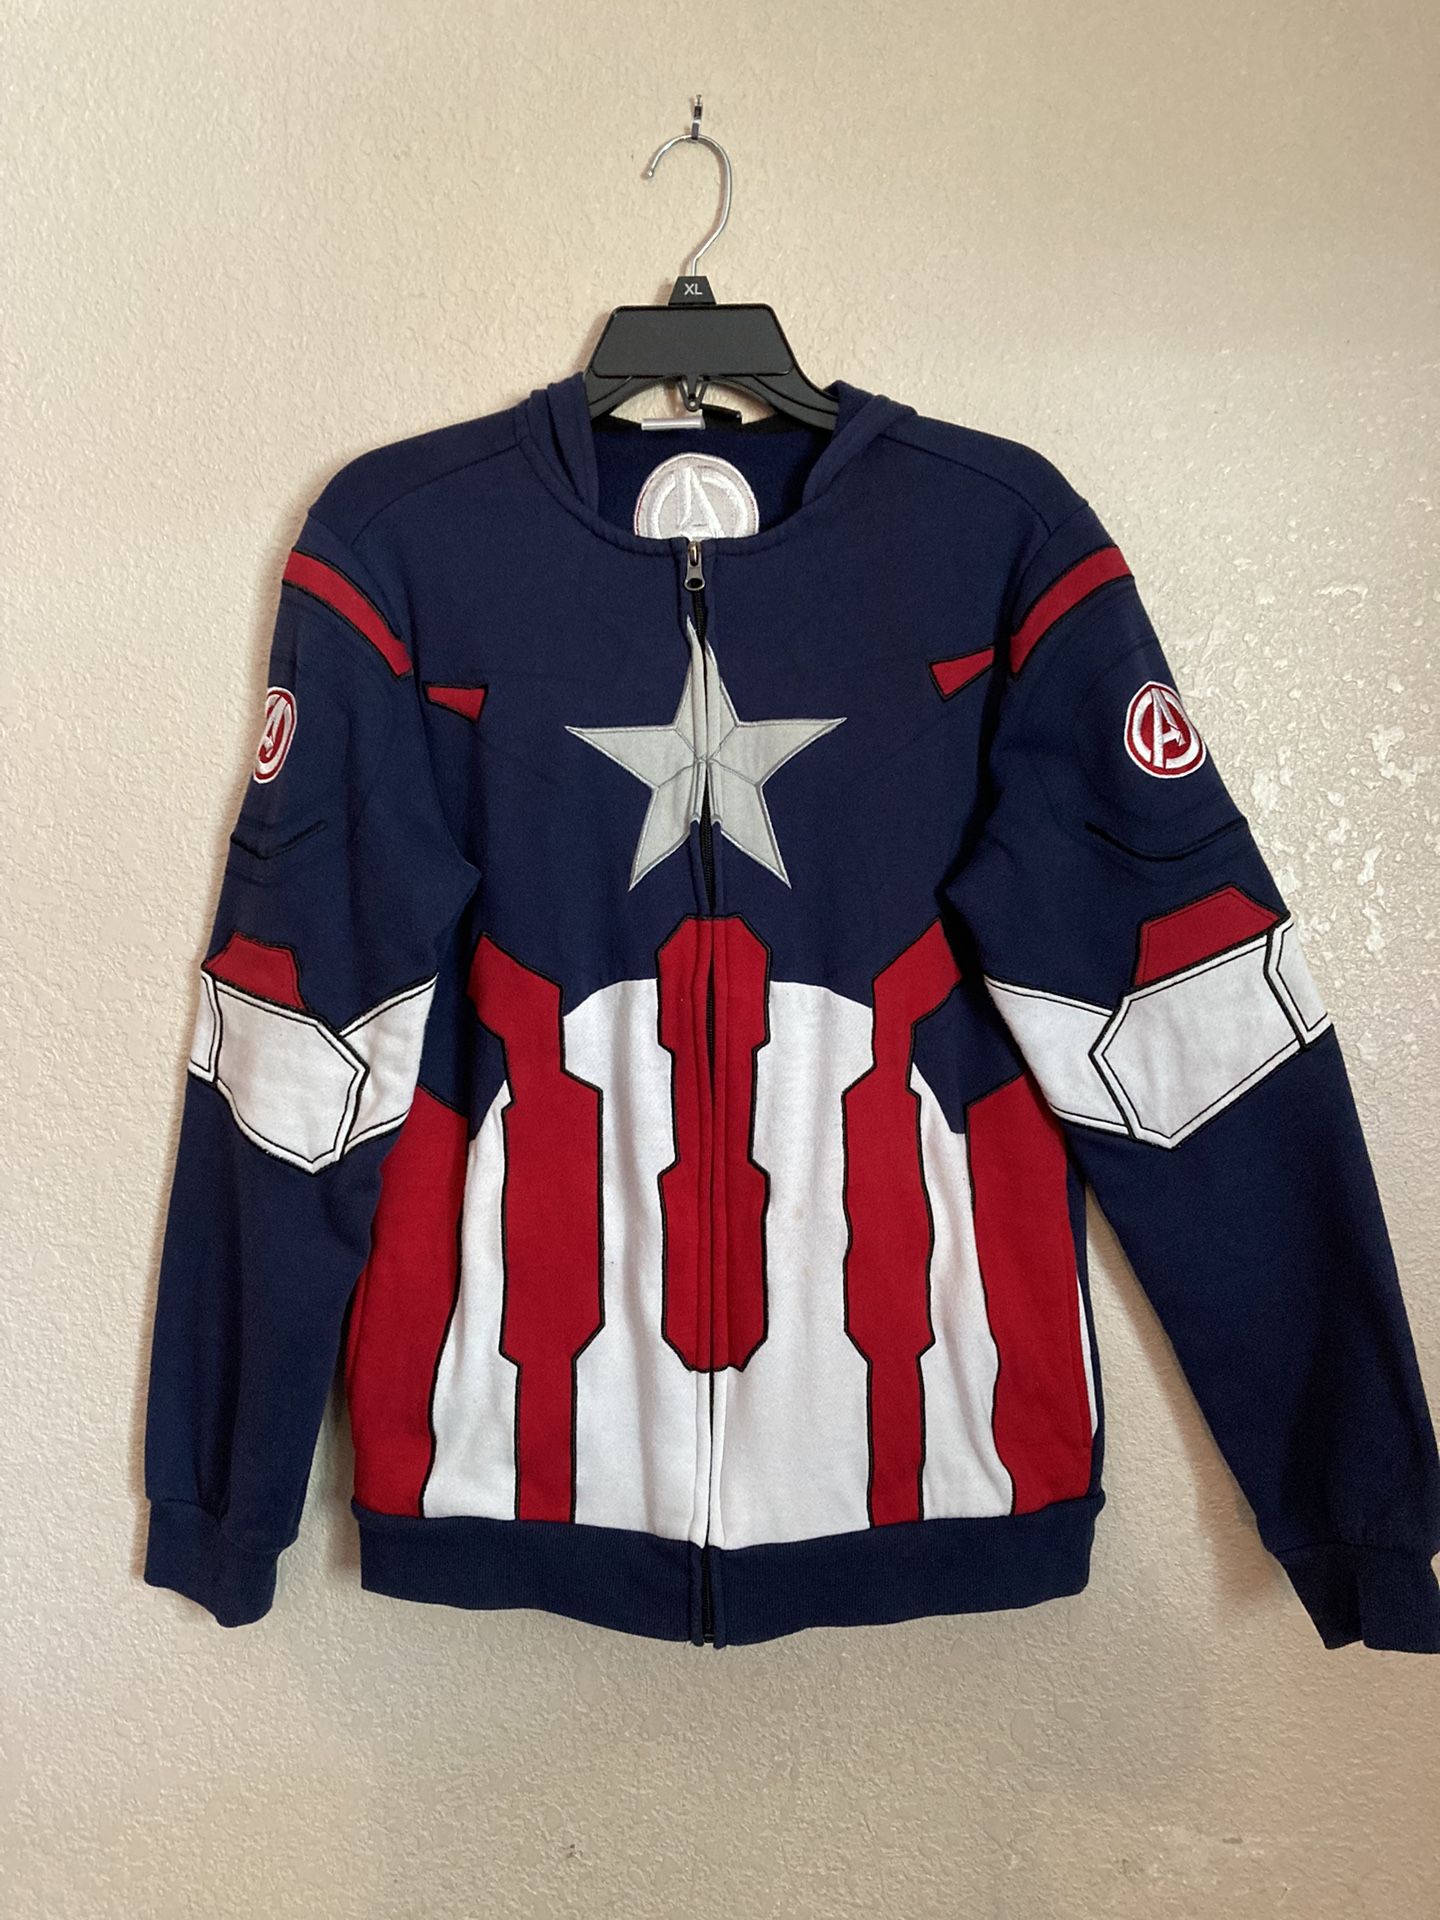 Avengers captain America 